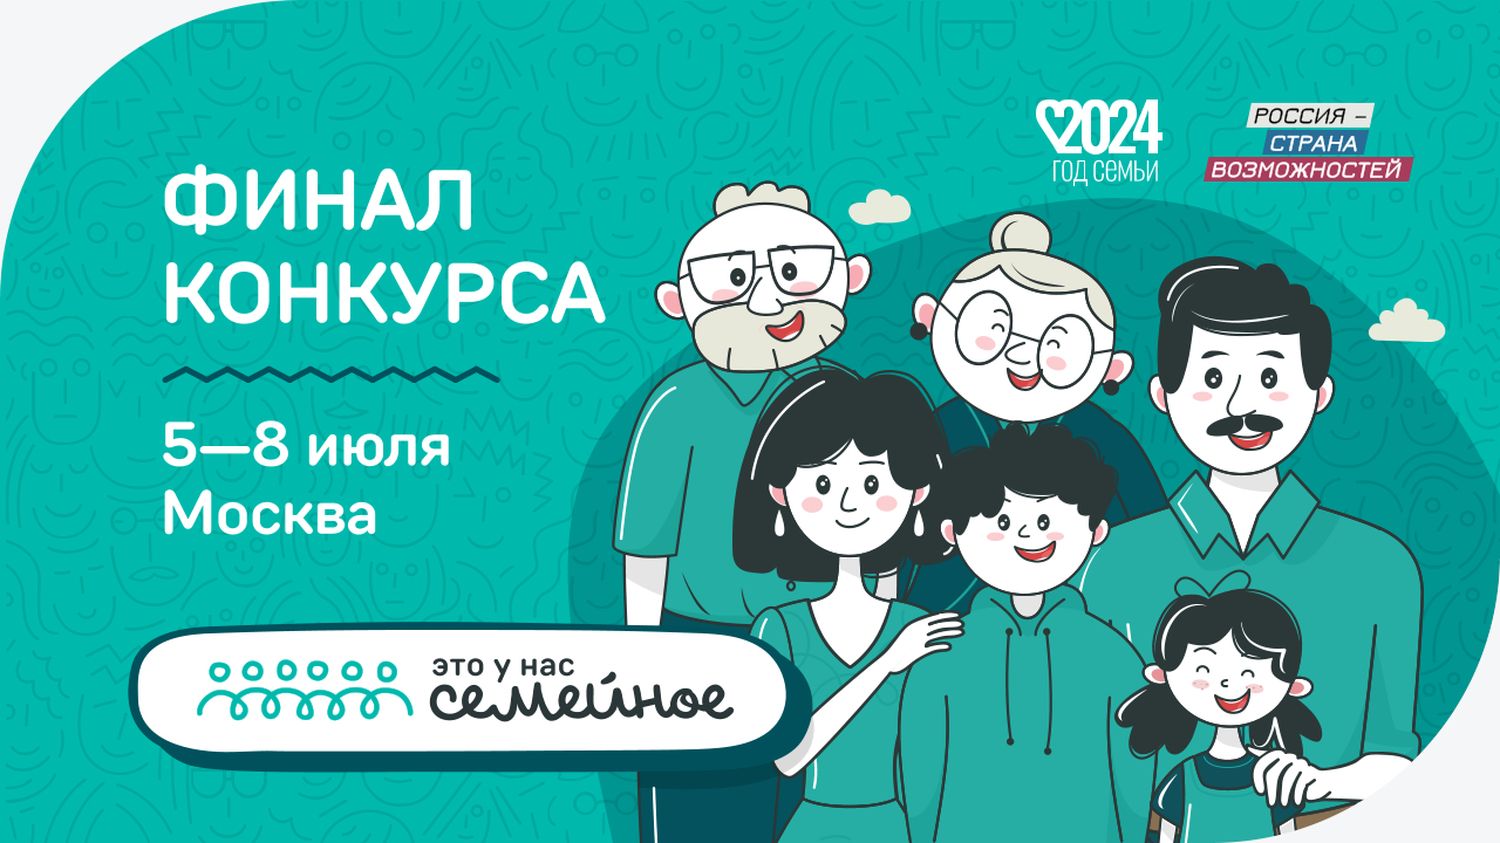 Пять семейных команд из Ульяновской области отправятся на финал конкурса «Это у нас семейное», а потом – в путешествие